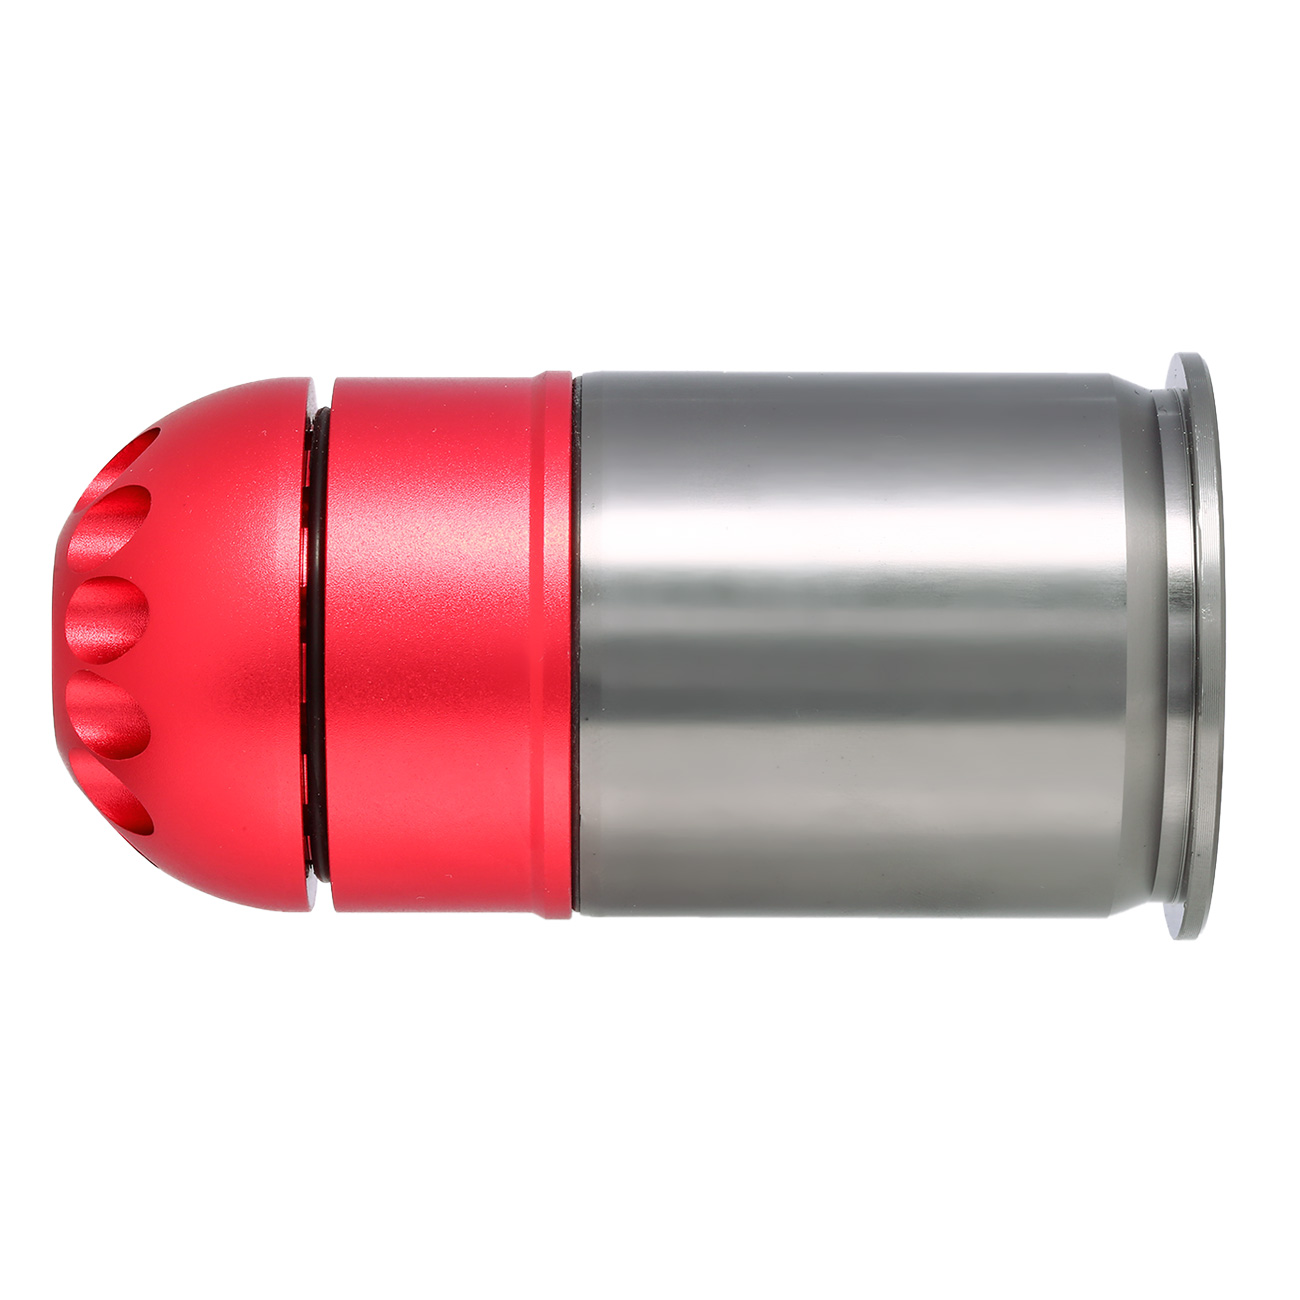 Nuprol 40mm Vollmetall Hülse / Einlegepatrone f. 72 6mm BBs rot Bild 1